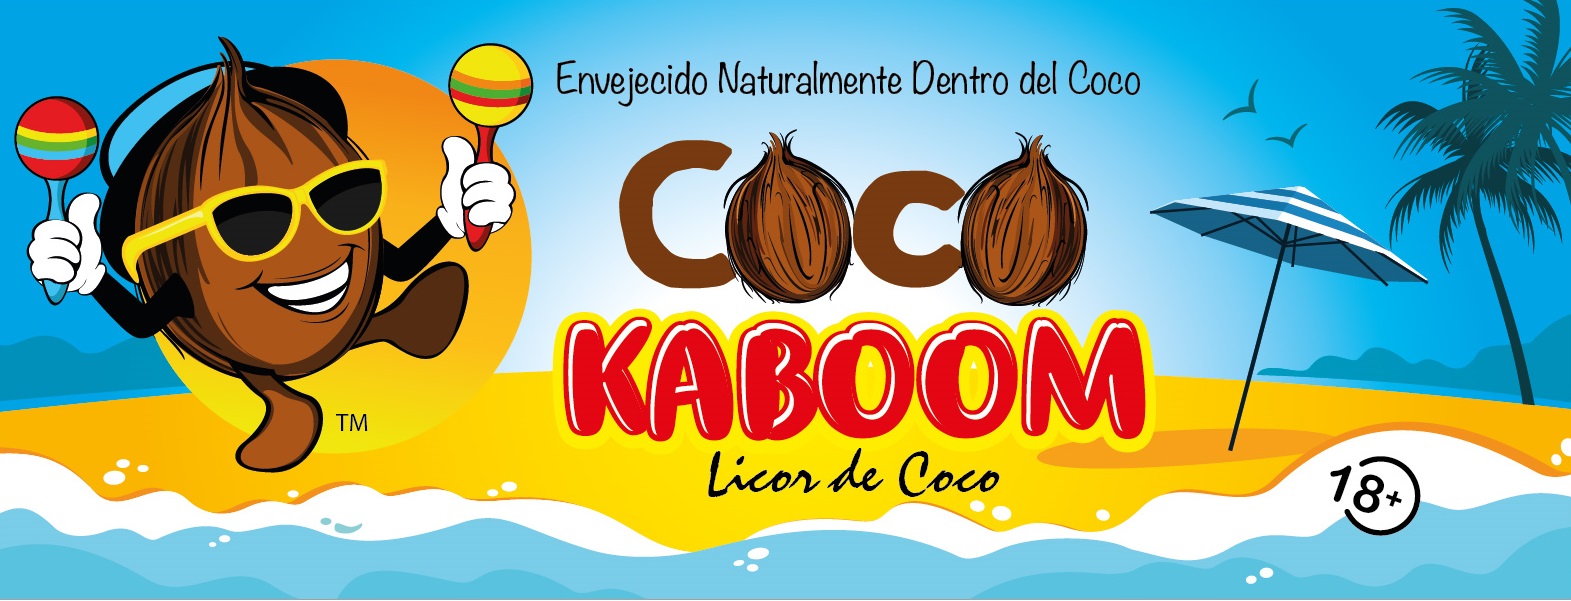 Coco-Kaboom Logo